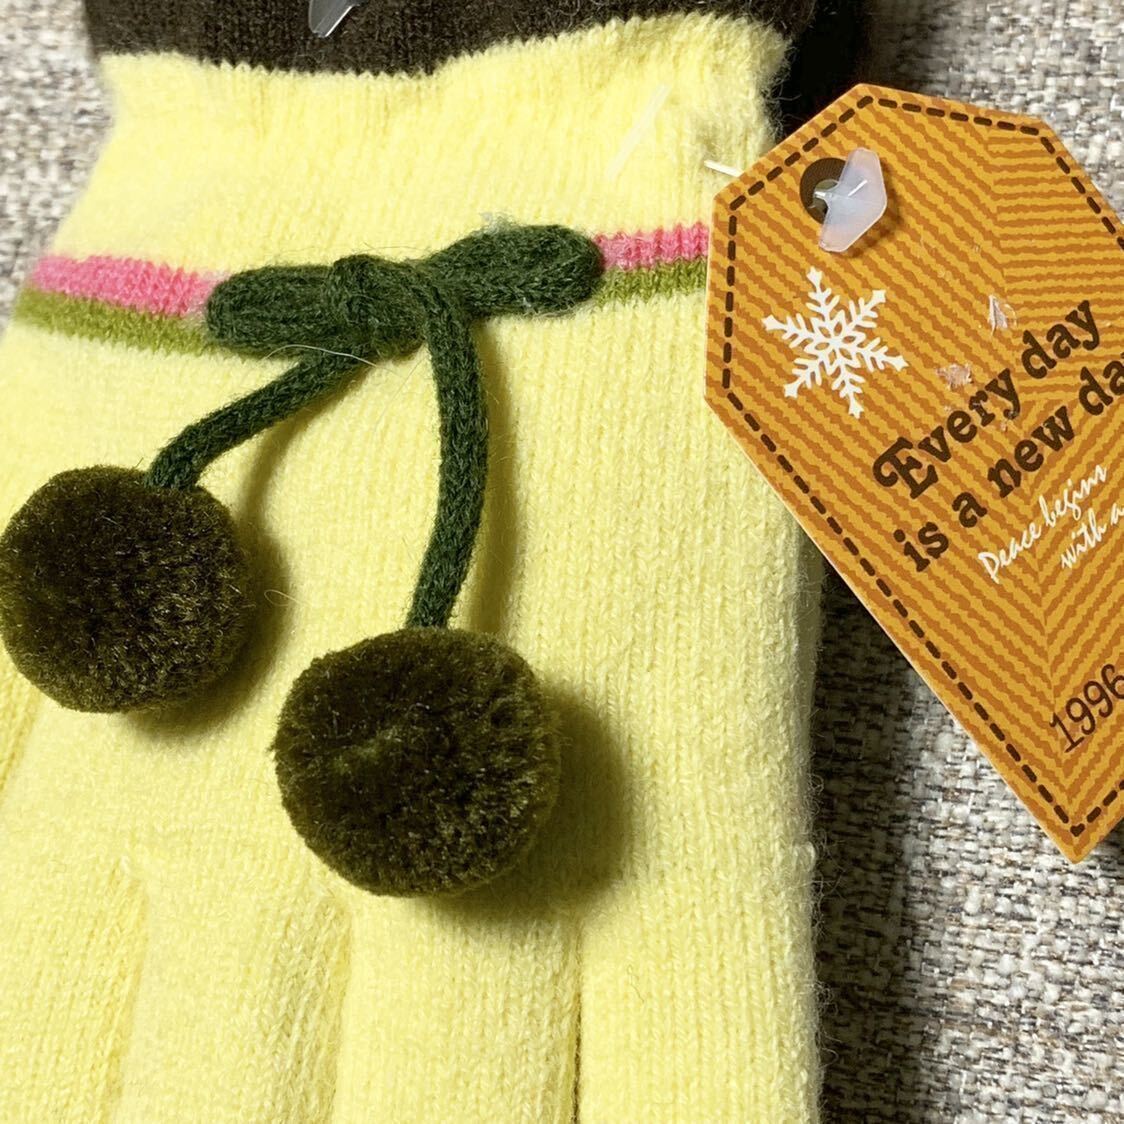  новый товар kids Kids ребенок перчатки защищающий от холода симпатичный пальто down лотерейный мешок желтый 